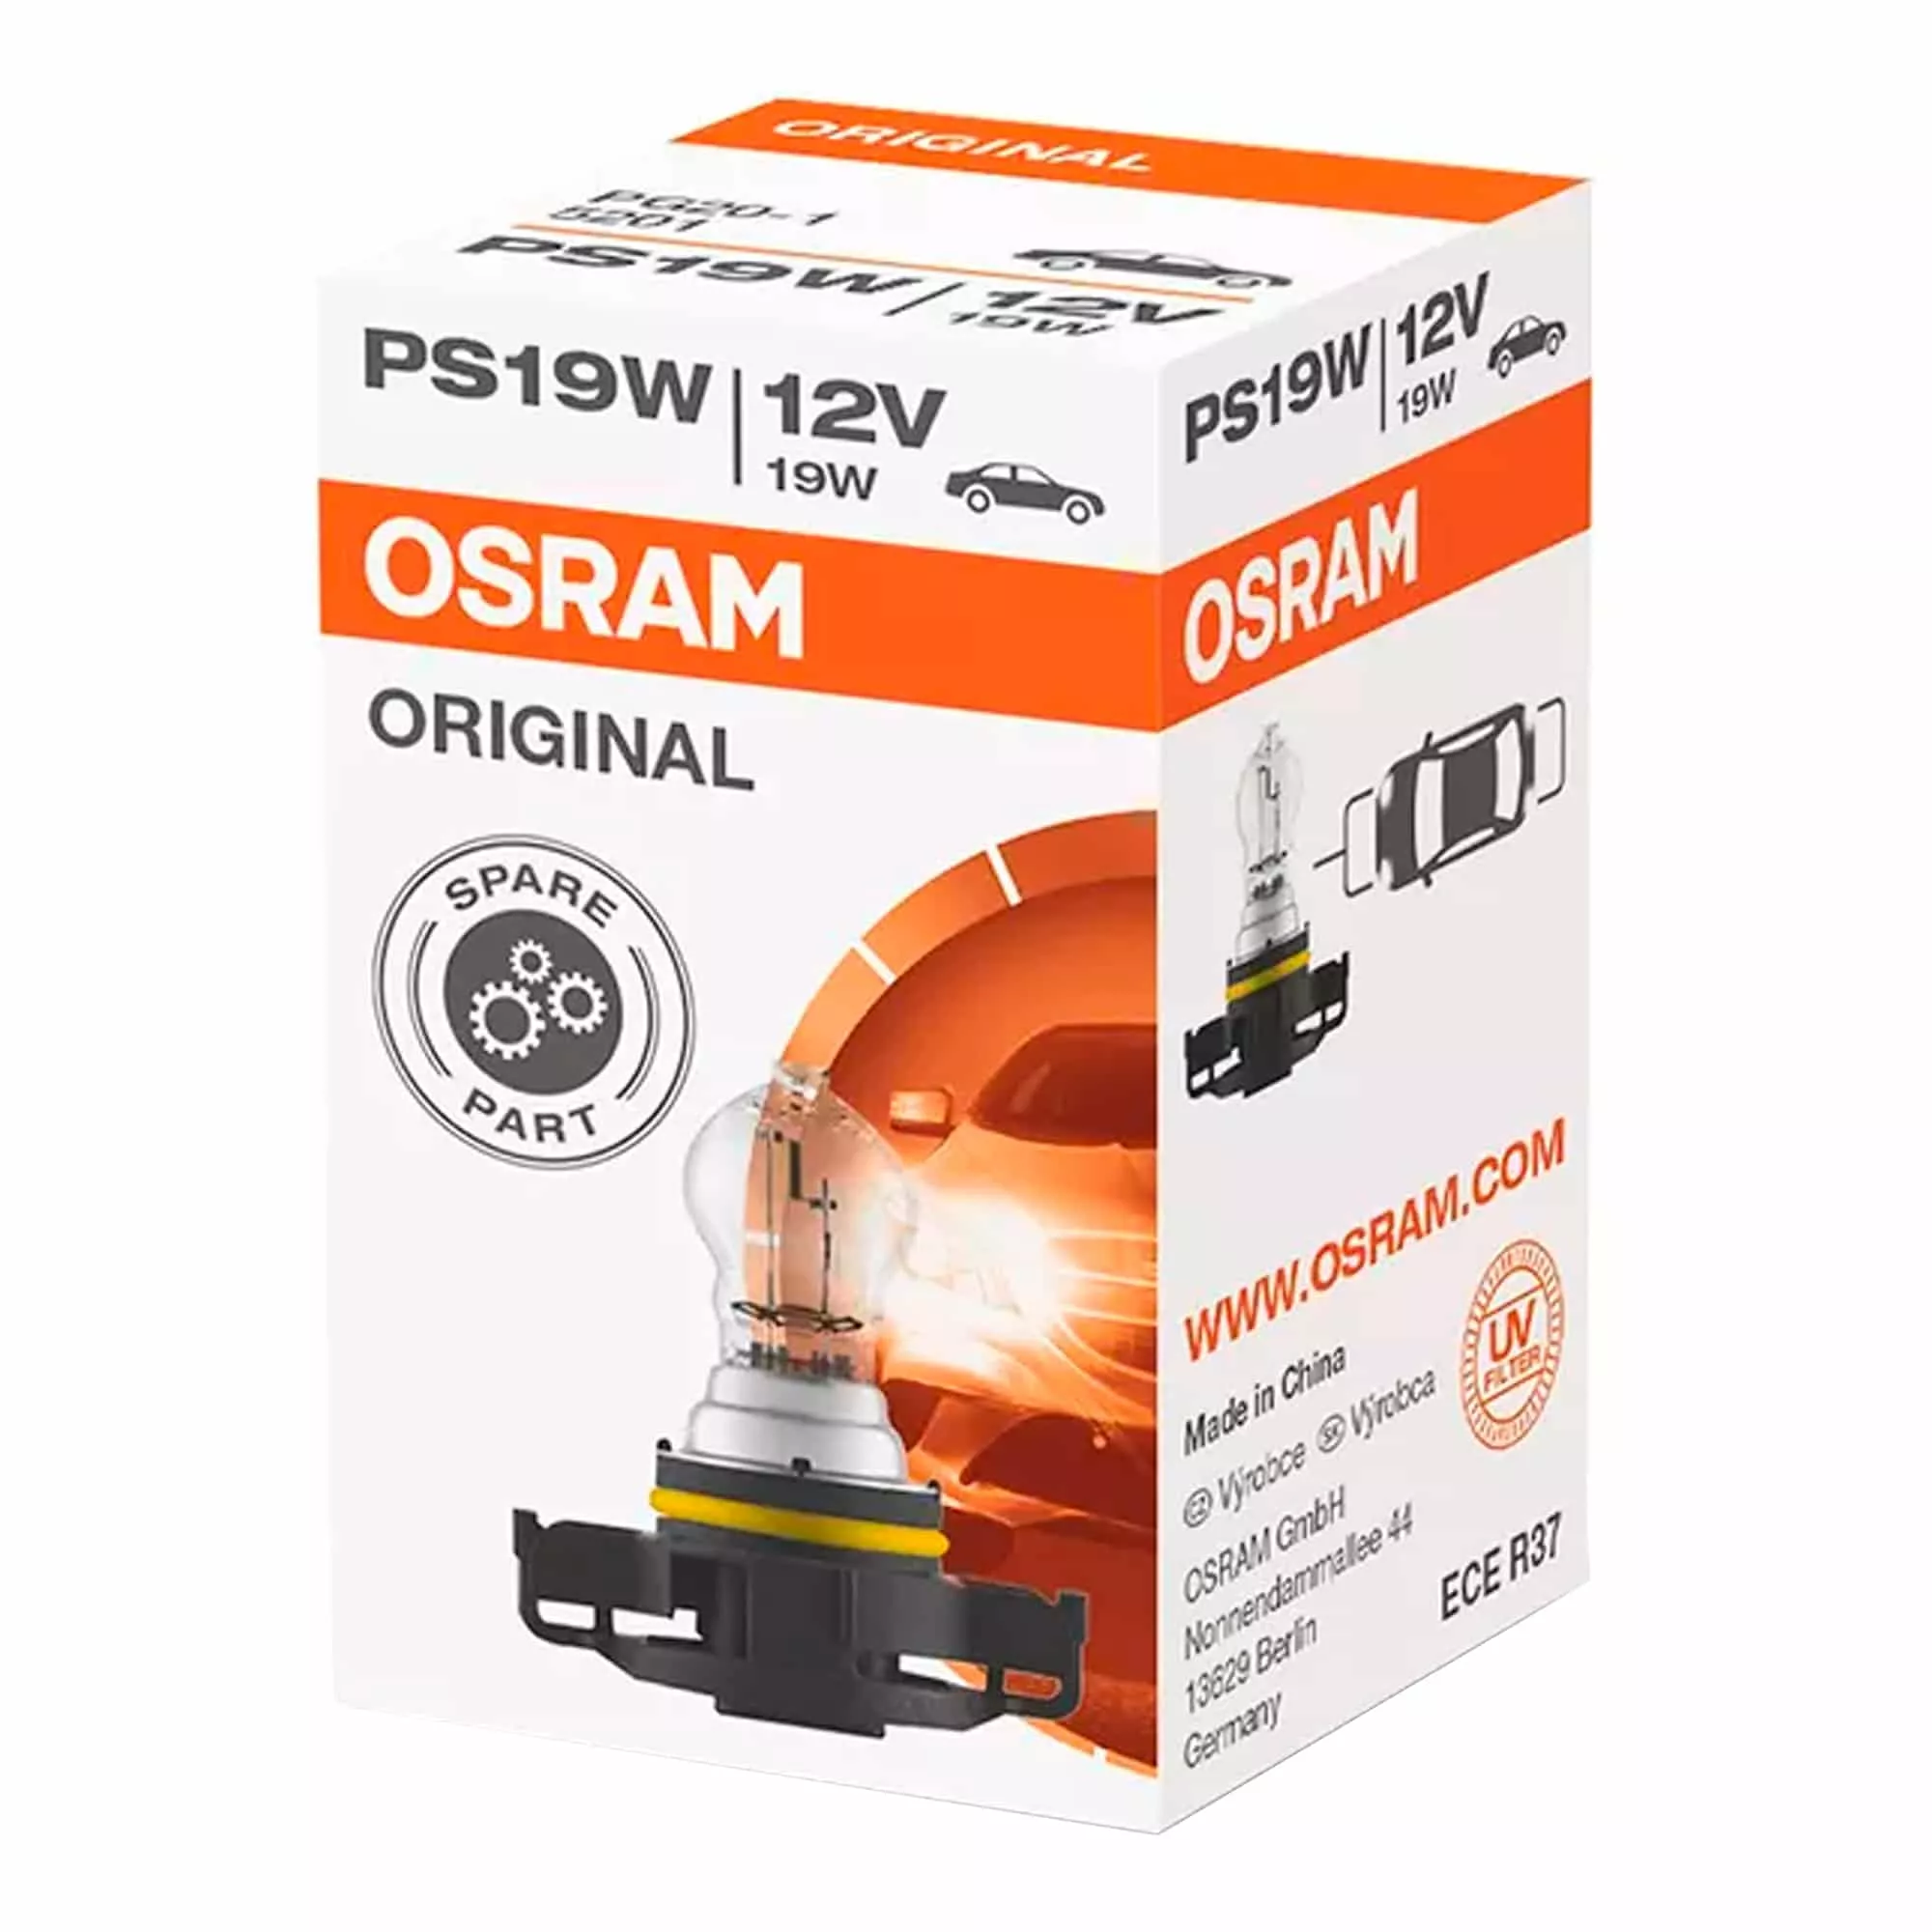 Лампа Osram Original PS19W PG20/1 12V 19W 5201